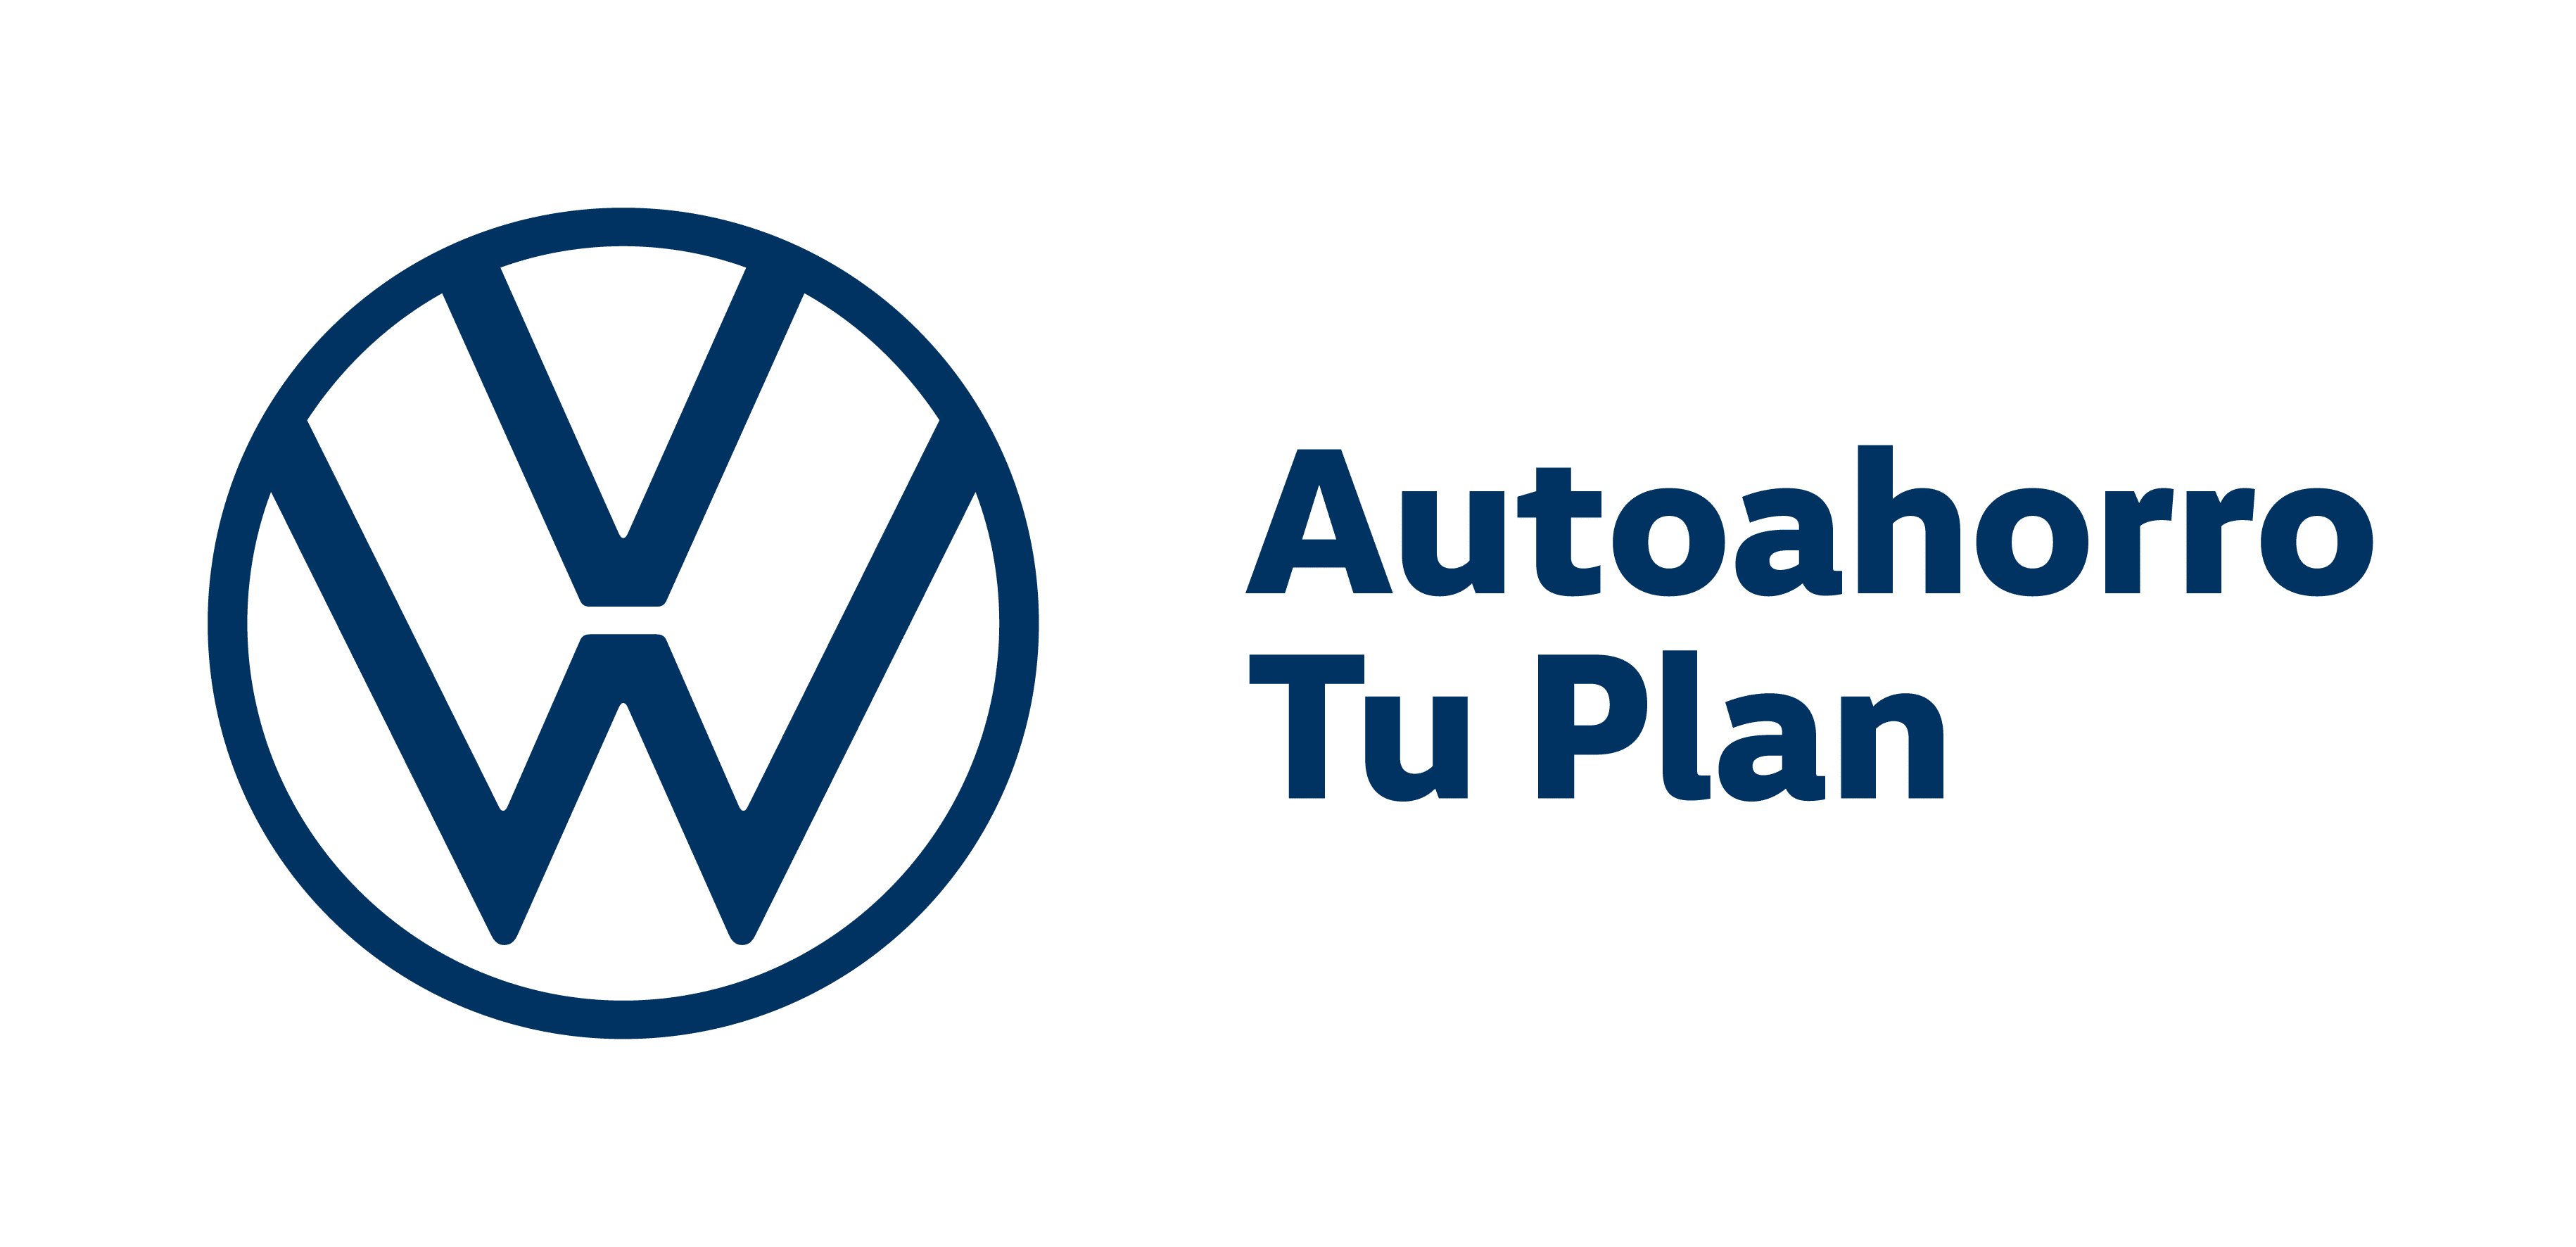 autoahorro Volkswagen consultar estado de cuenta